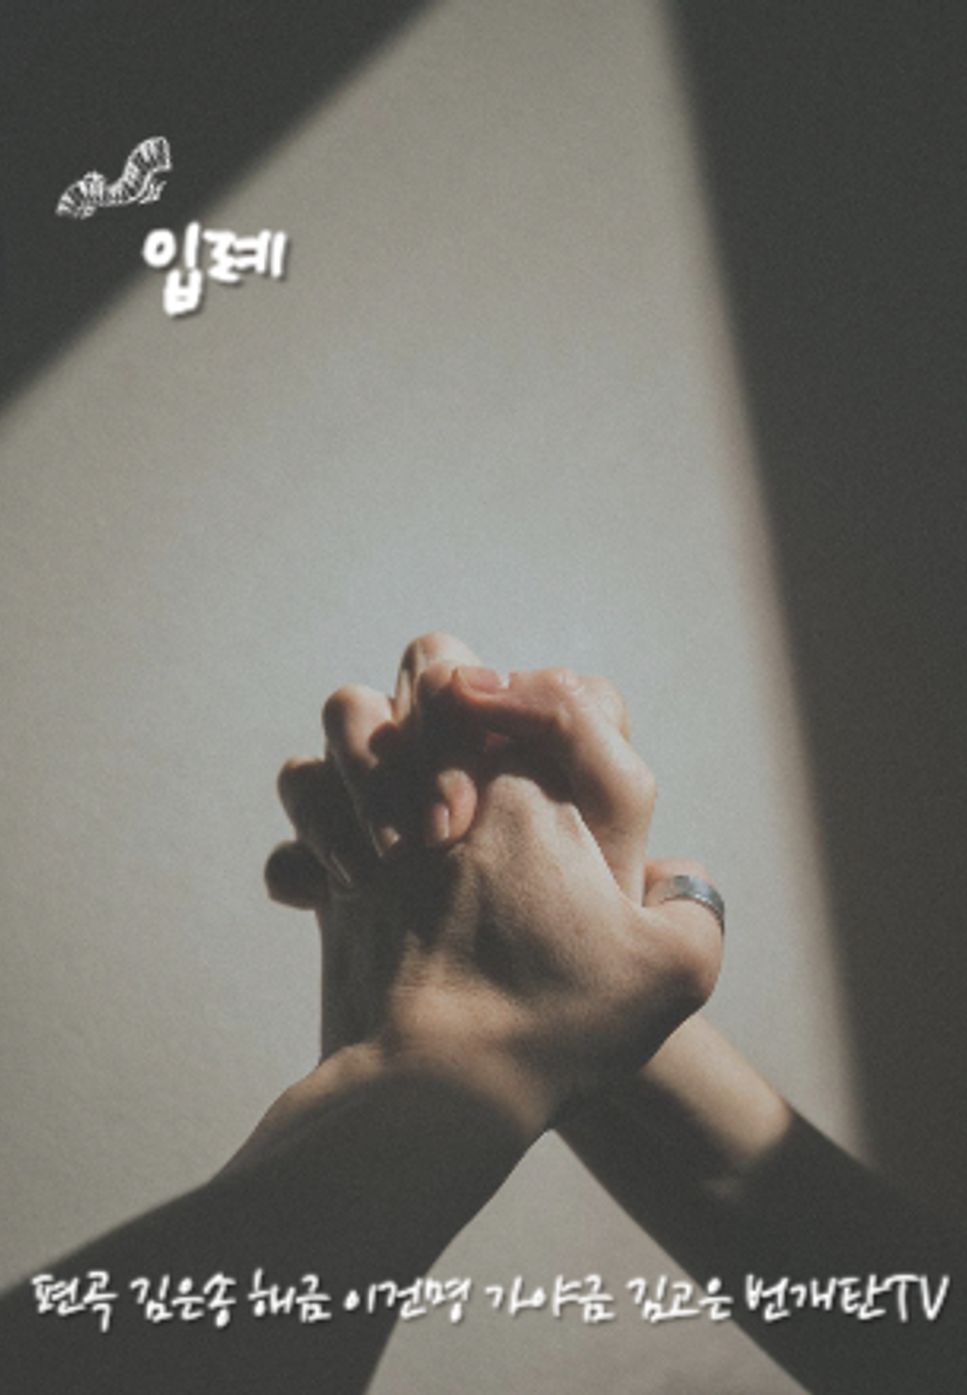 위러브 - 입례 (예배하는 자 되어) by 뮤직힐링